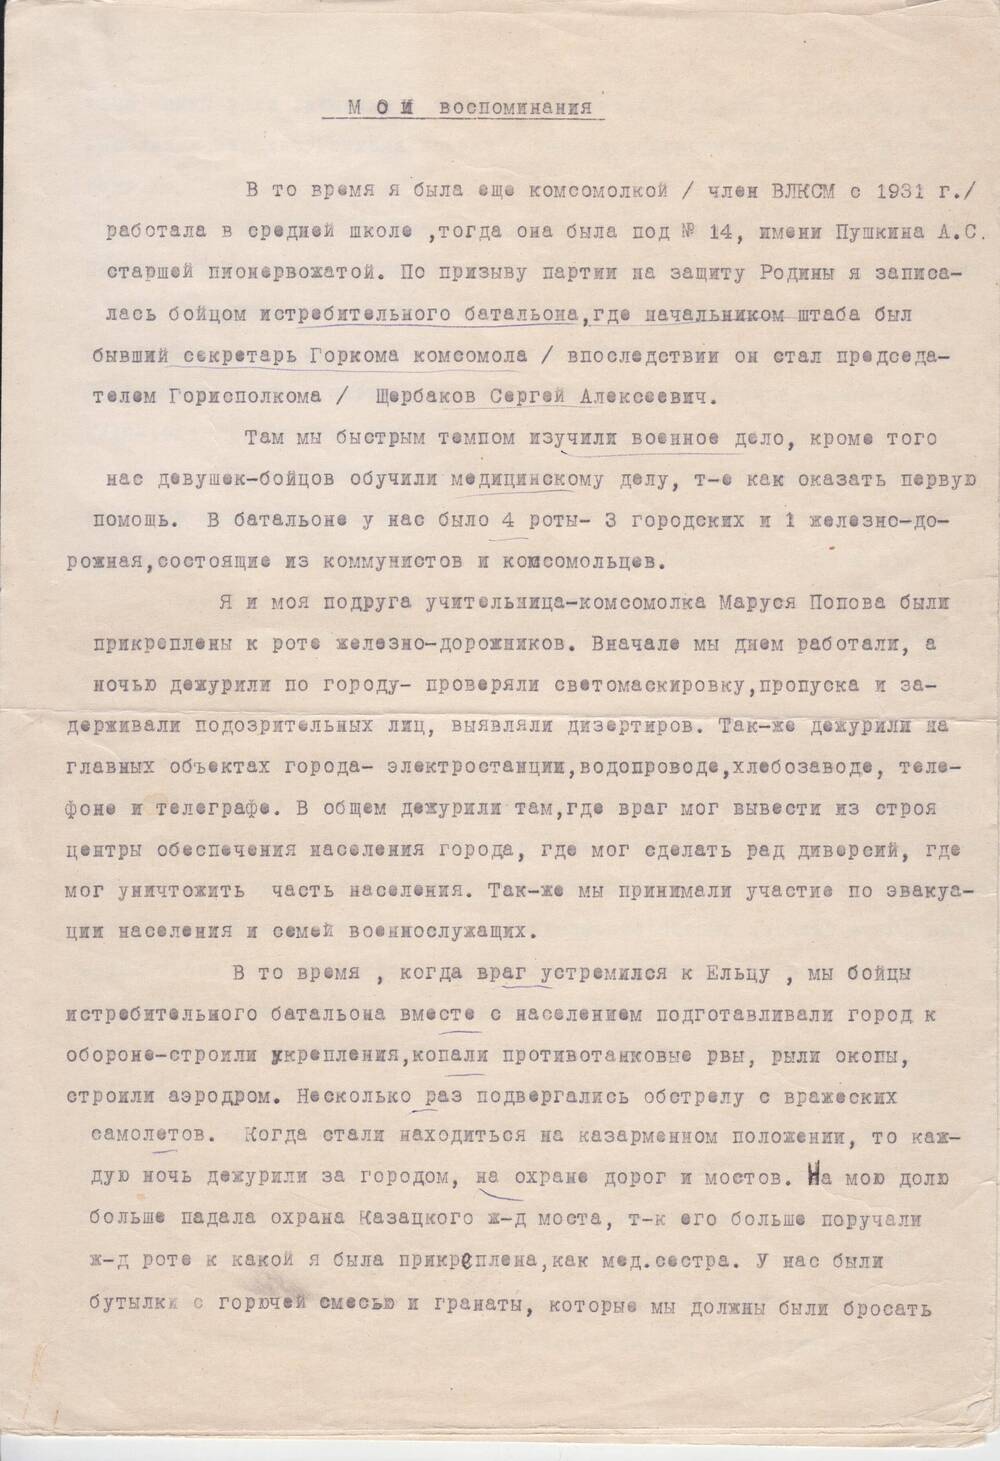 Воспоминания Архиповой Н.М.  – бойца – санитара истребительного батальона, 6.05.1970 г.